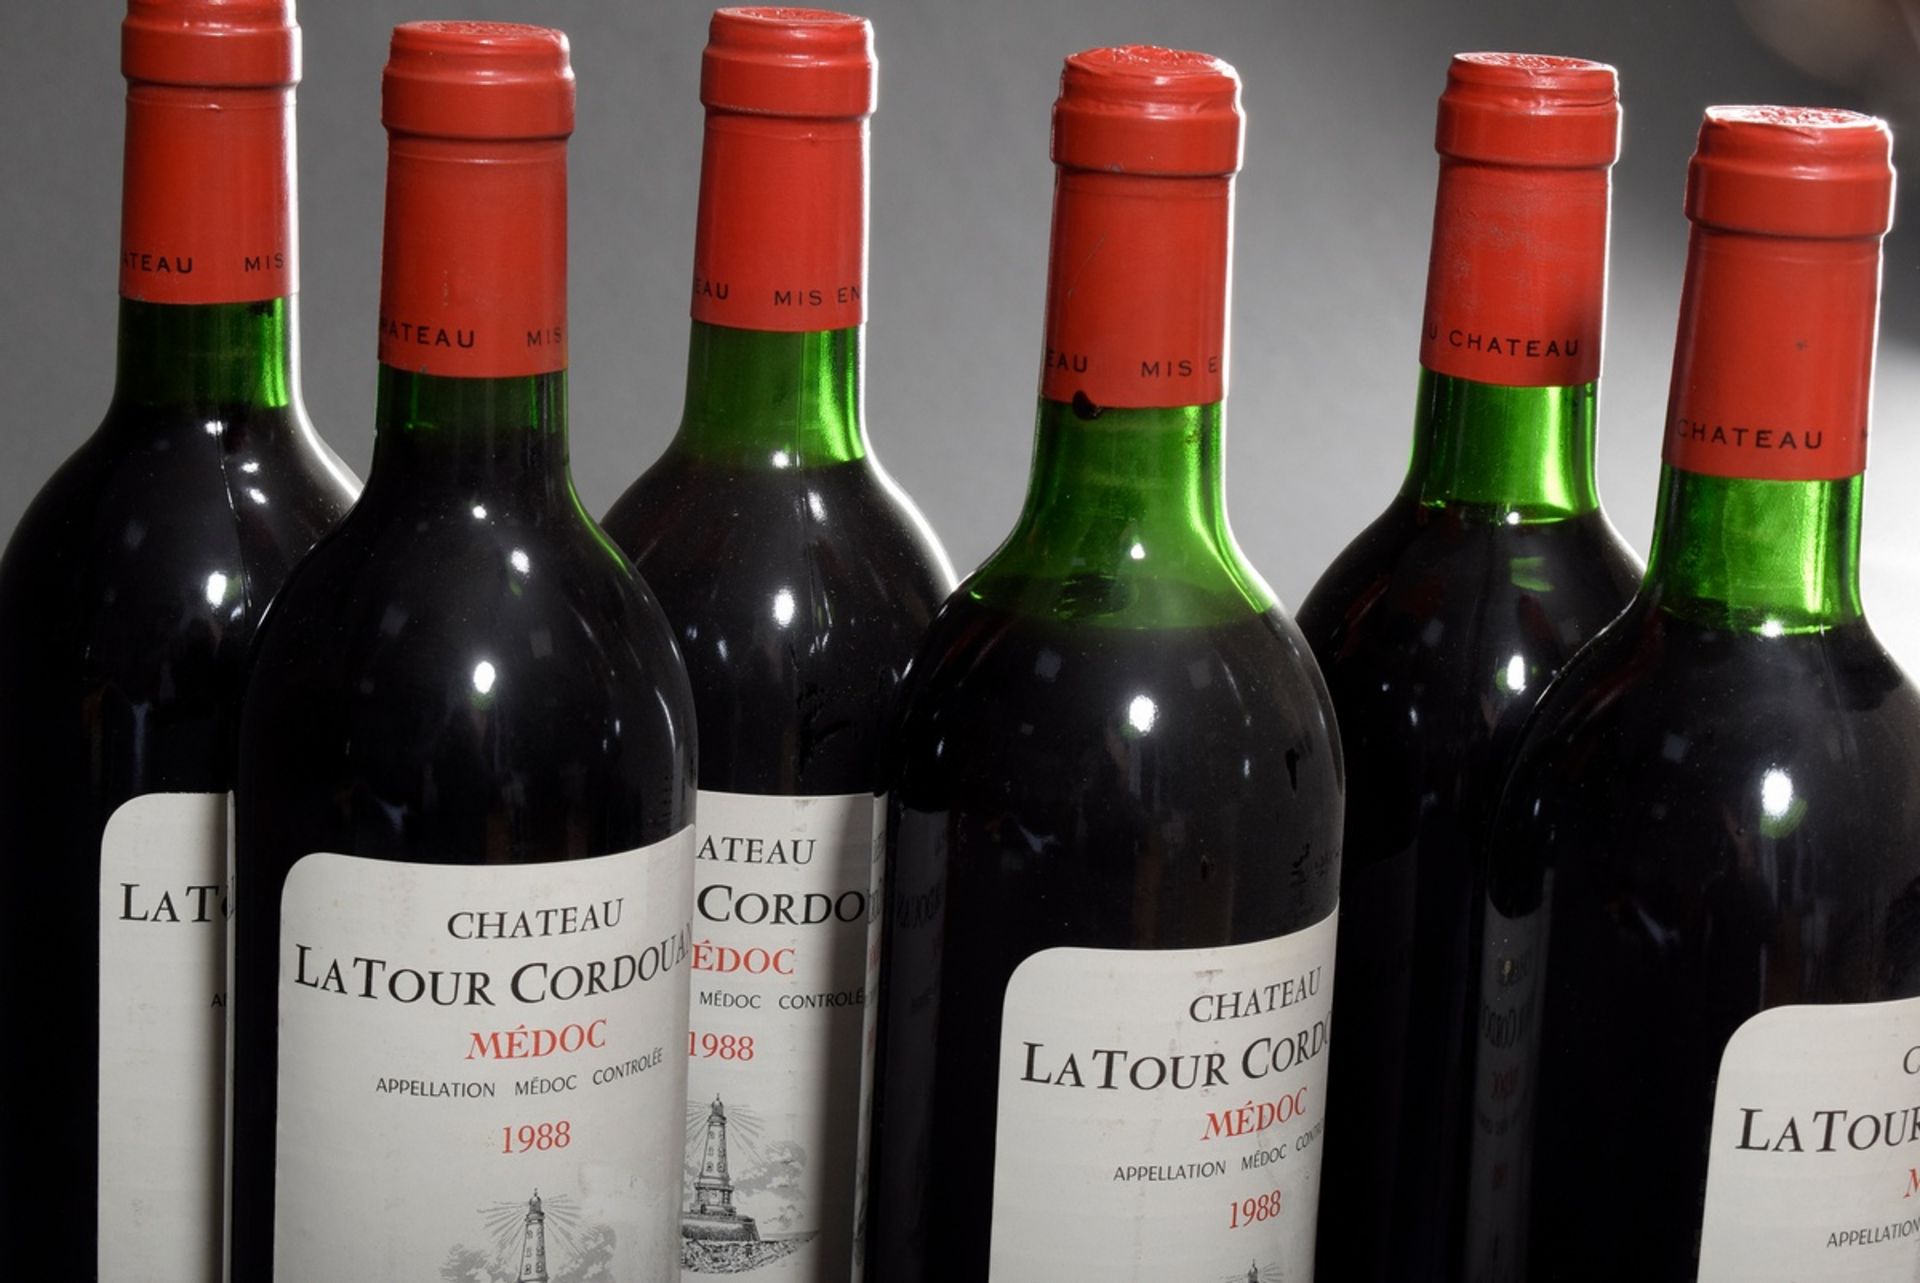 6 bottles 1988 Chateau la Tour Cordouan, Medoc, Bordeaux, Red wine, 0,75l, contains sulfites - Image 3 of 3